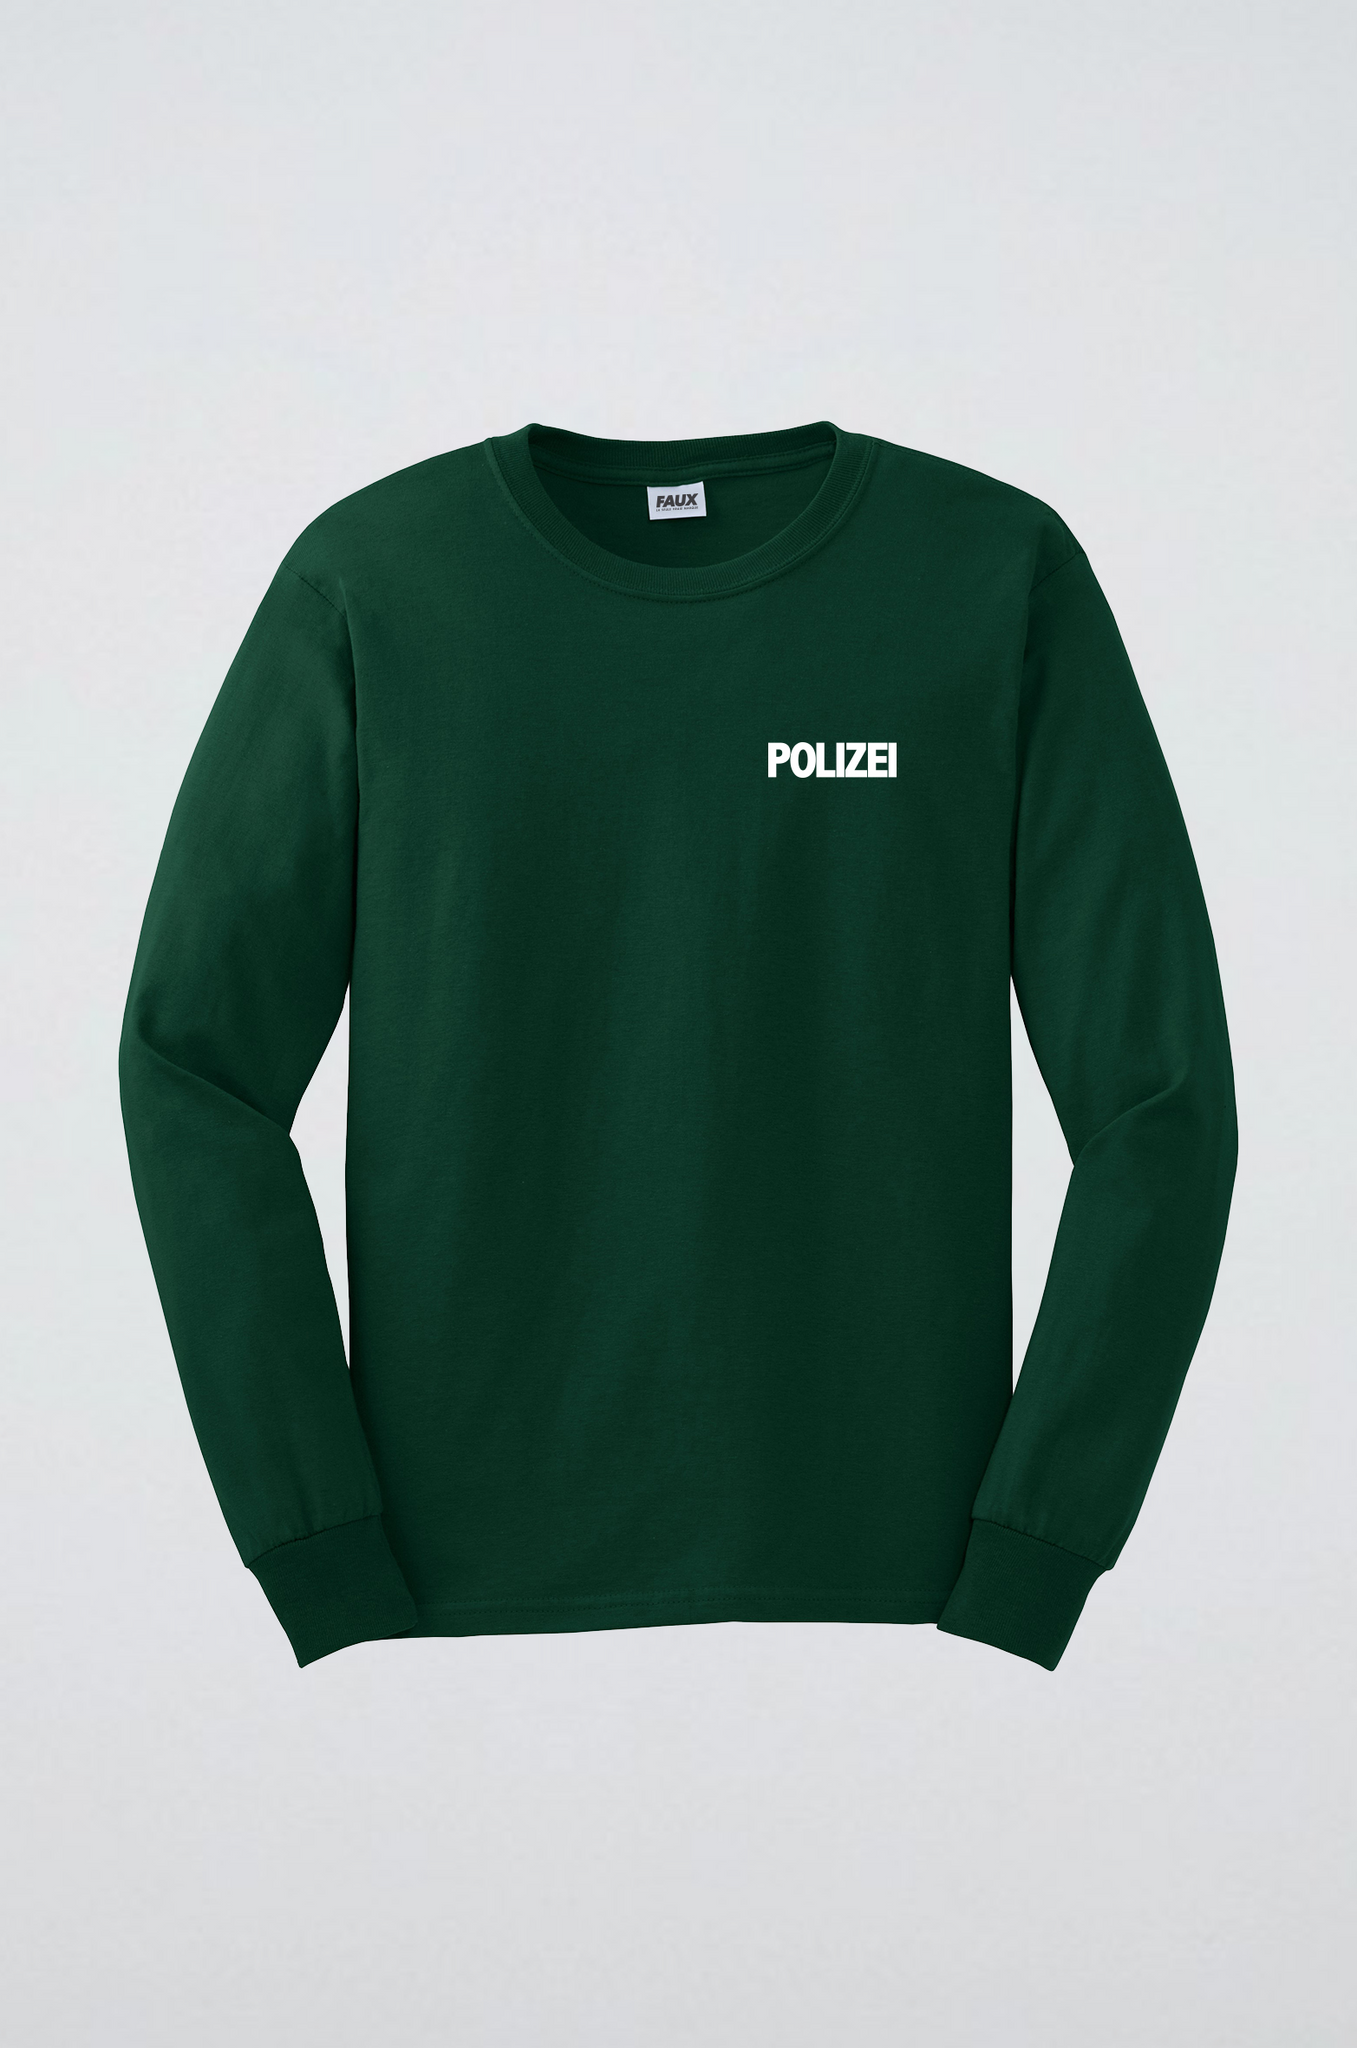 Polizei - T-Shirt manches longues-T shirt-Atelier Amelot